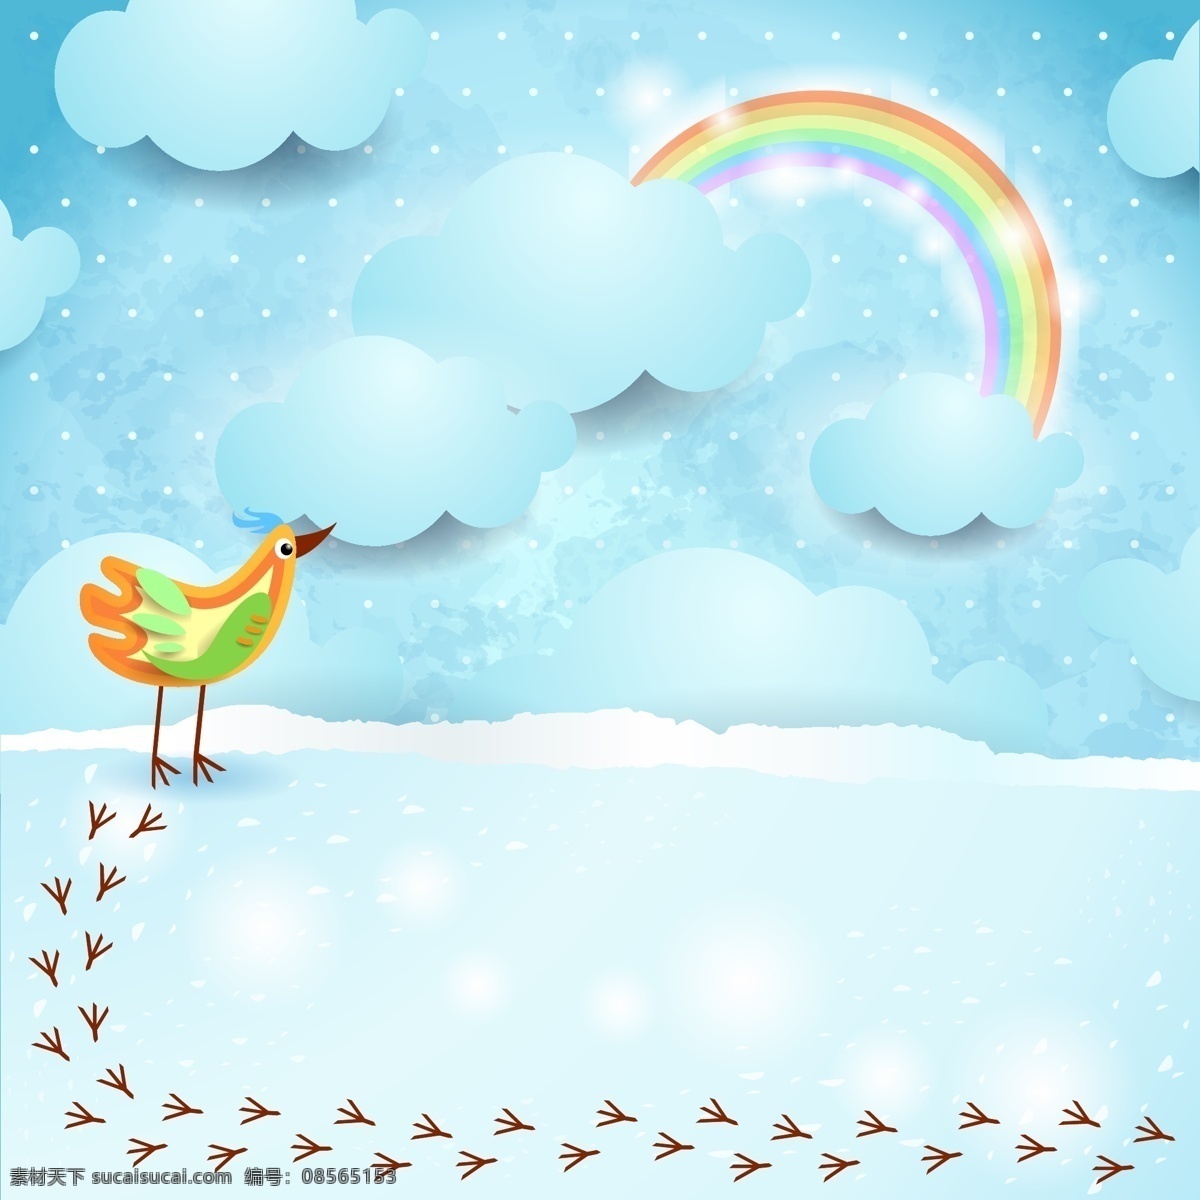 彩色 鸟 彩虹 剪贴 水玉点 脚印 云朵 天空 矢量 高清图片